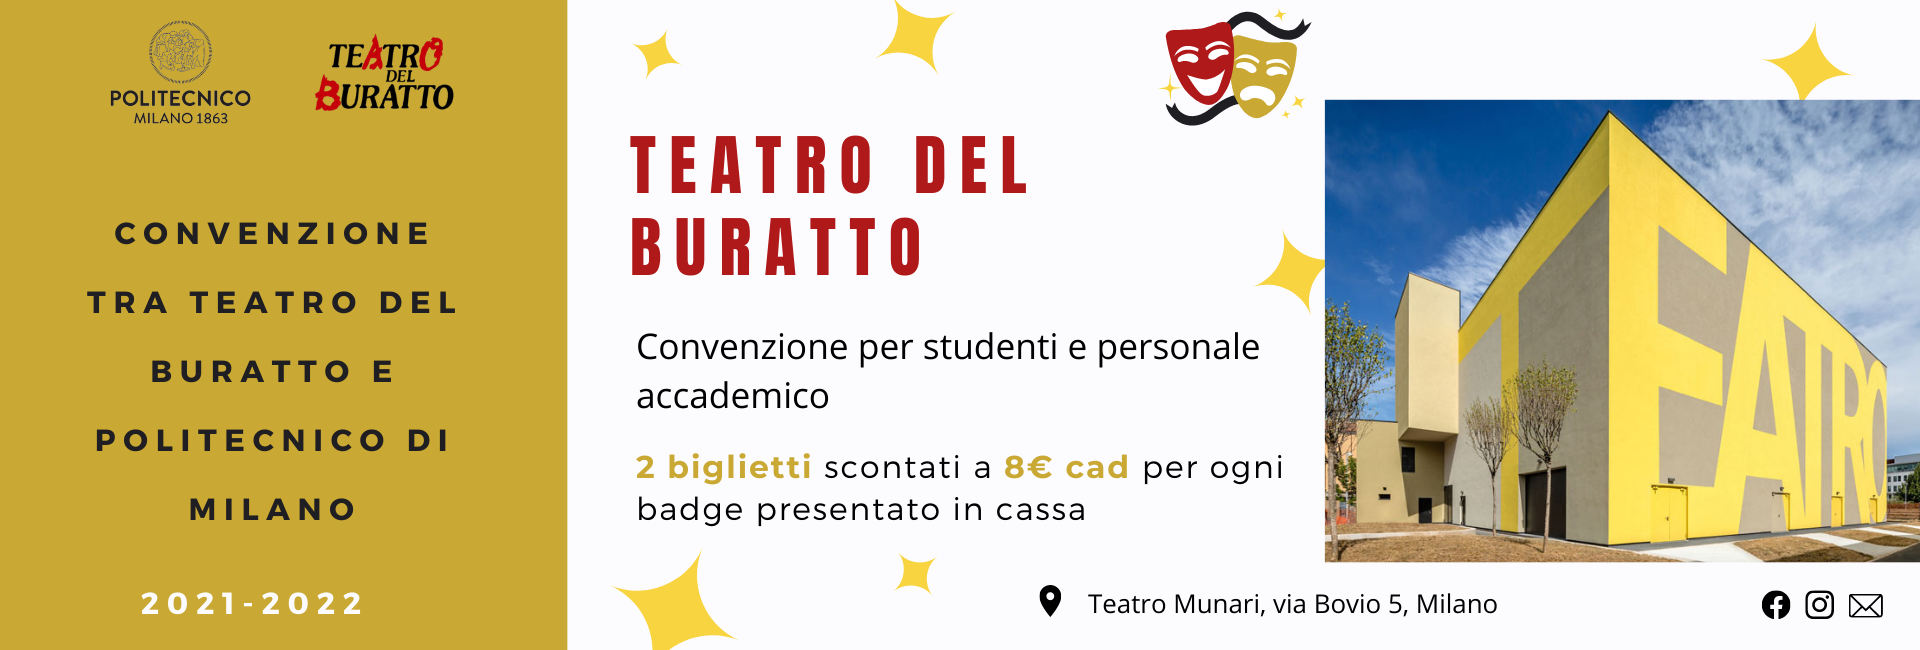 Teatro del Buratto: convenzioni per studenti e personale accademico - 2 biglietti scontati a 8 € cadauno per ogni badge presentato in cassa